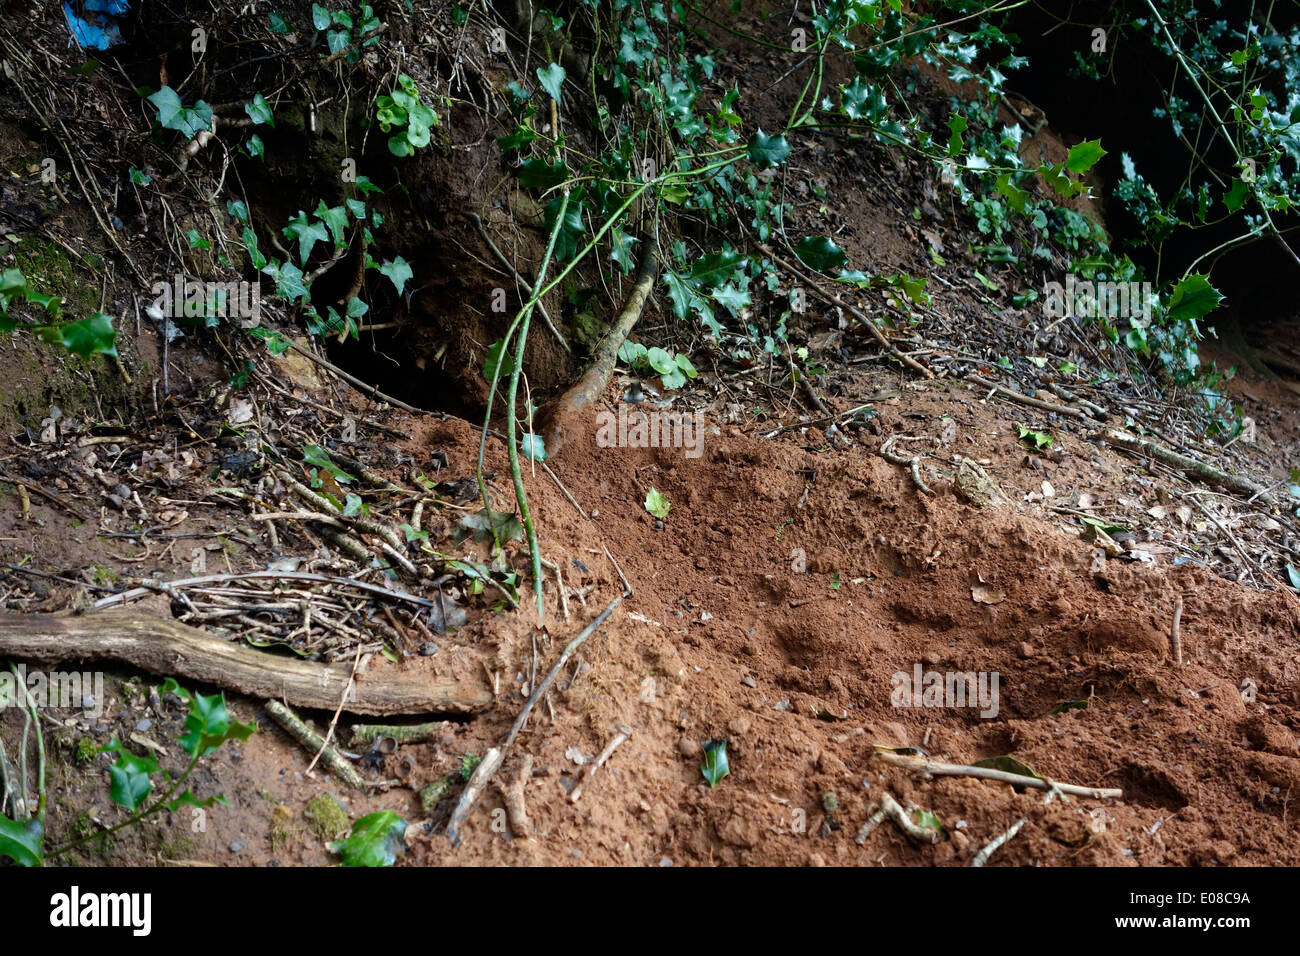 Tejón Meles meles - Pruebas de excavación y sett actividad sobre arena banco de carretera a principios de la primavera Foto de stock